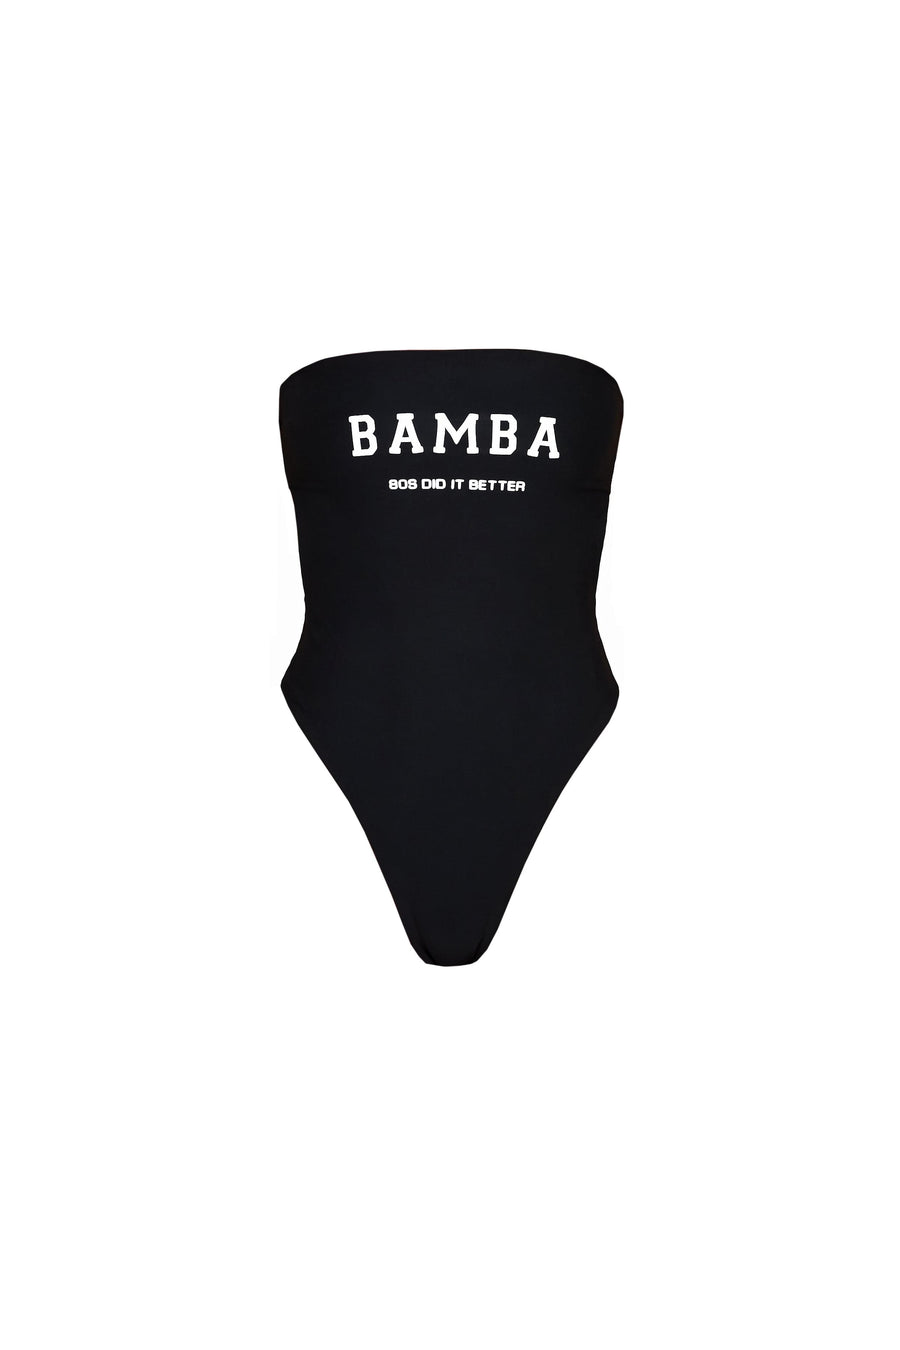 BAMBA ICON reversible one piece  -  ONE PIECE  -  B Ā M B A S W I M